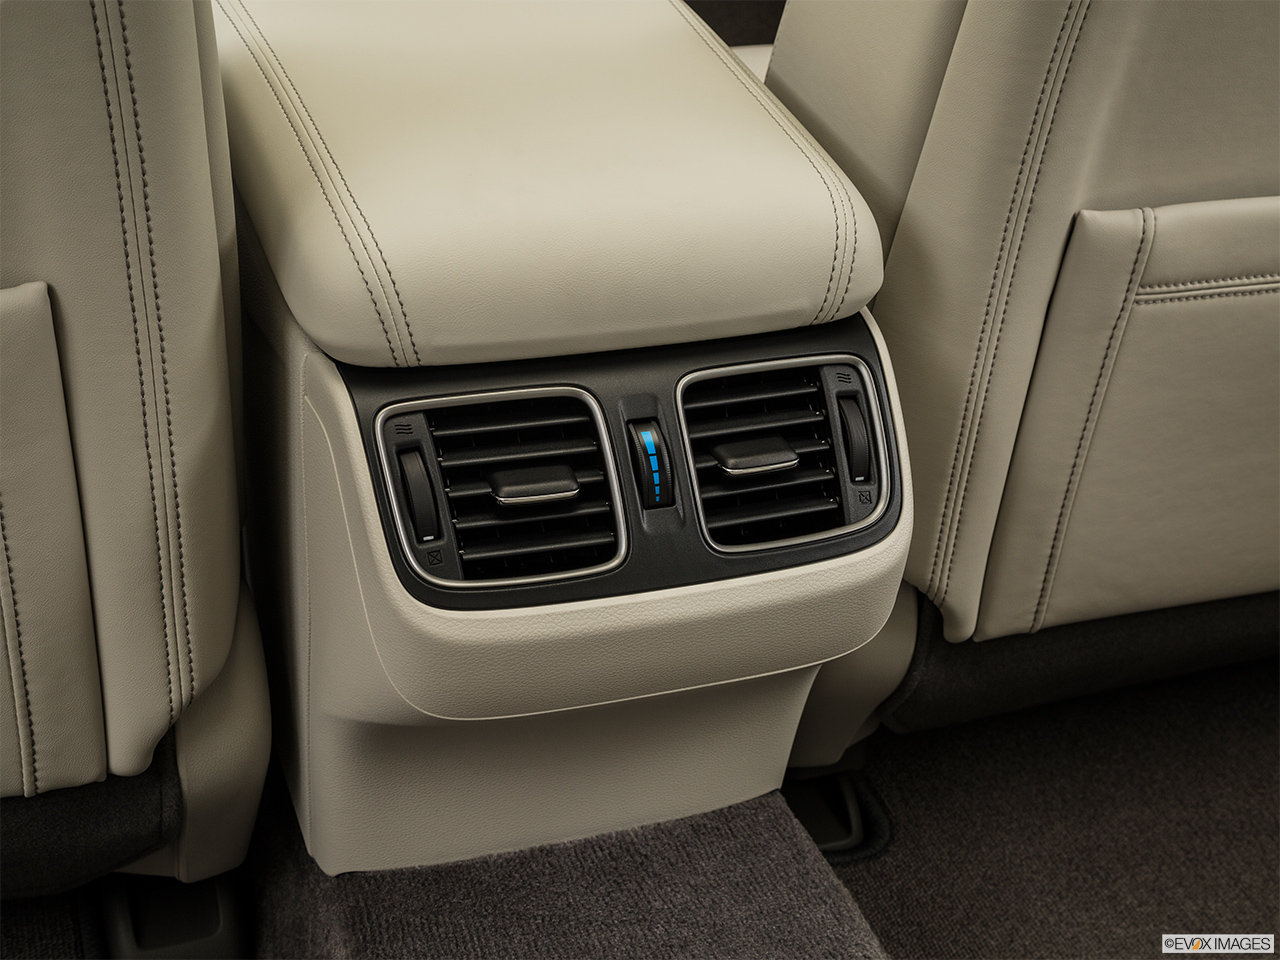 2015 Acura RLX Base Rear A/C controls. 